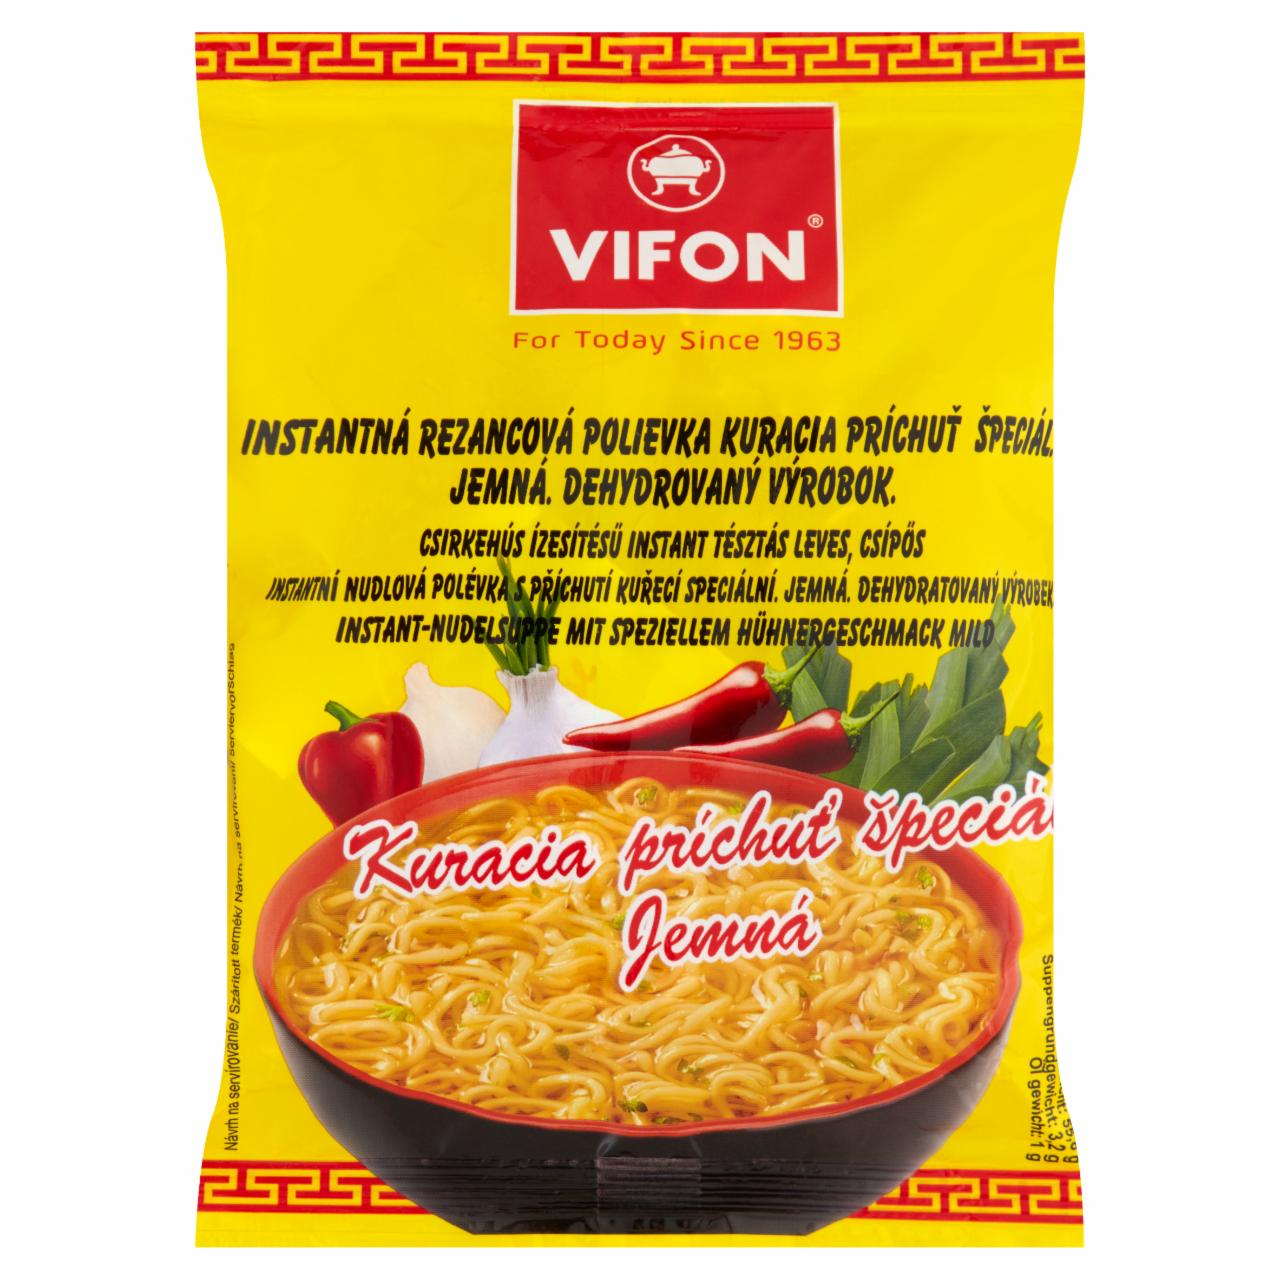 Képek - Csípős, csirkehús ízesítésű instant tésztás leves Vifon